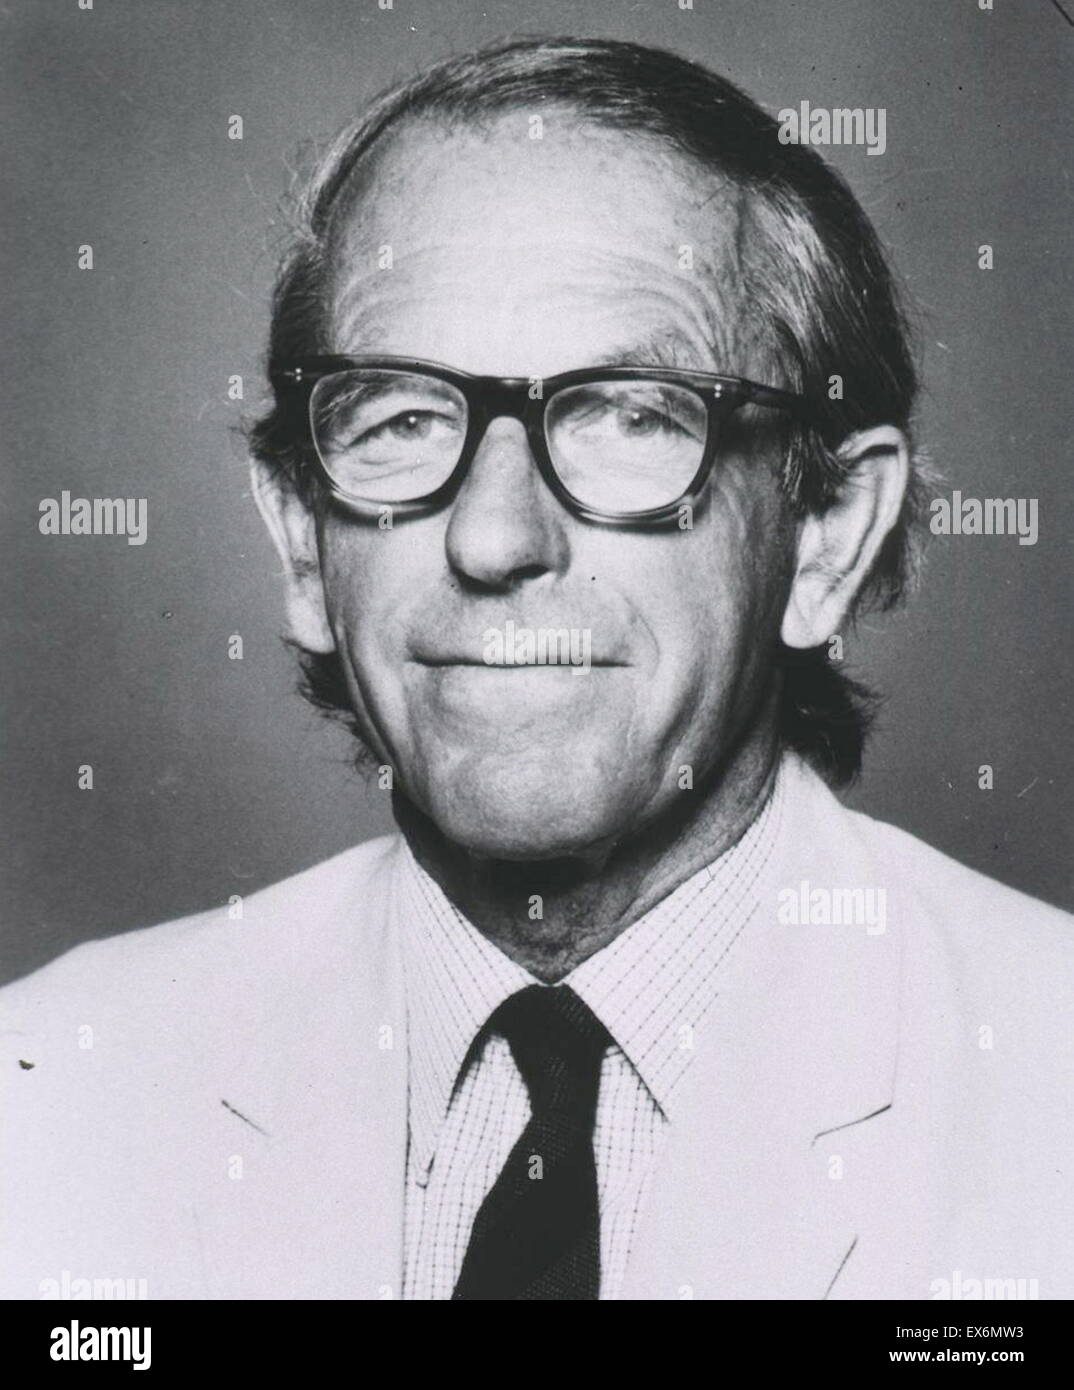 Fotografieren von Frederick Sanger (1918 – 2013) britischer Biochemiker, Nobelpreis für Chemie zweimal gewann. Datiert 1971 Stockfoto